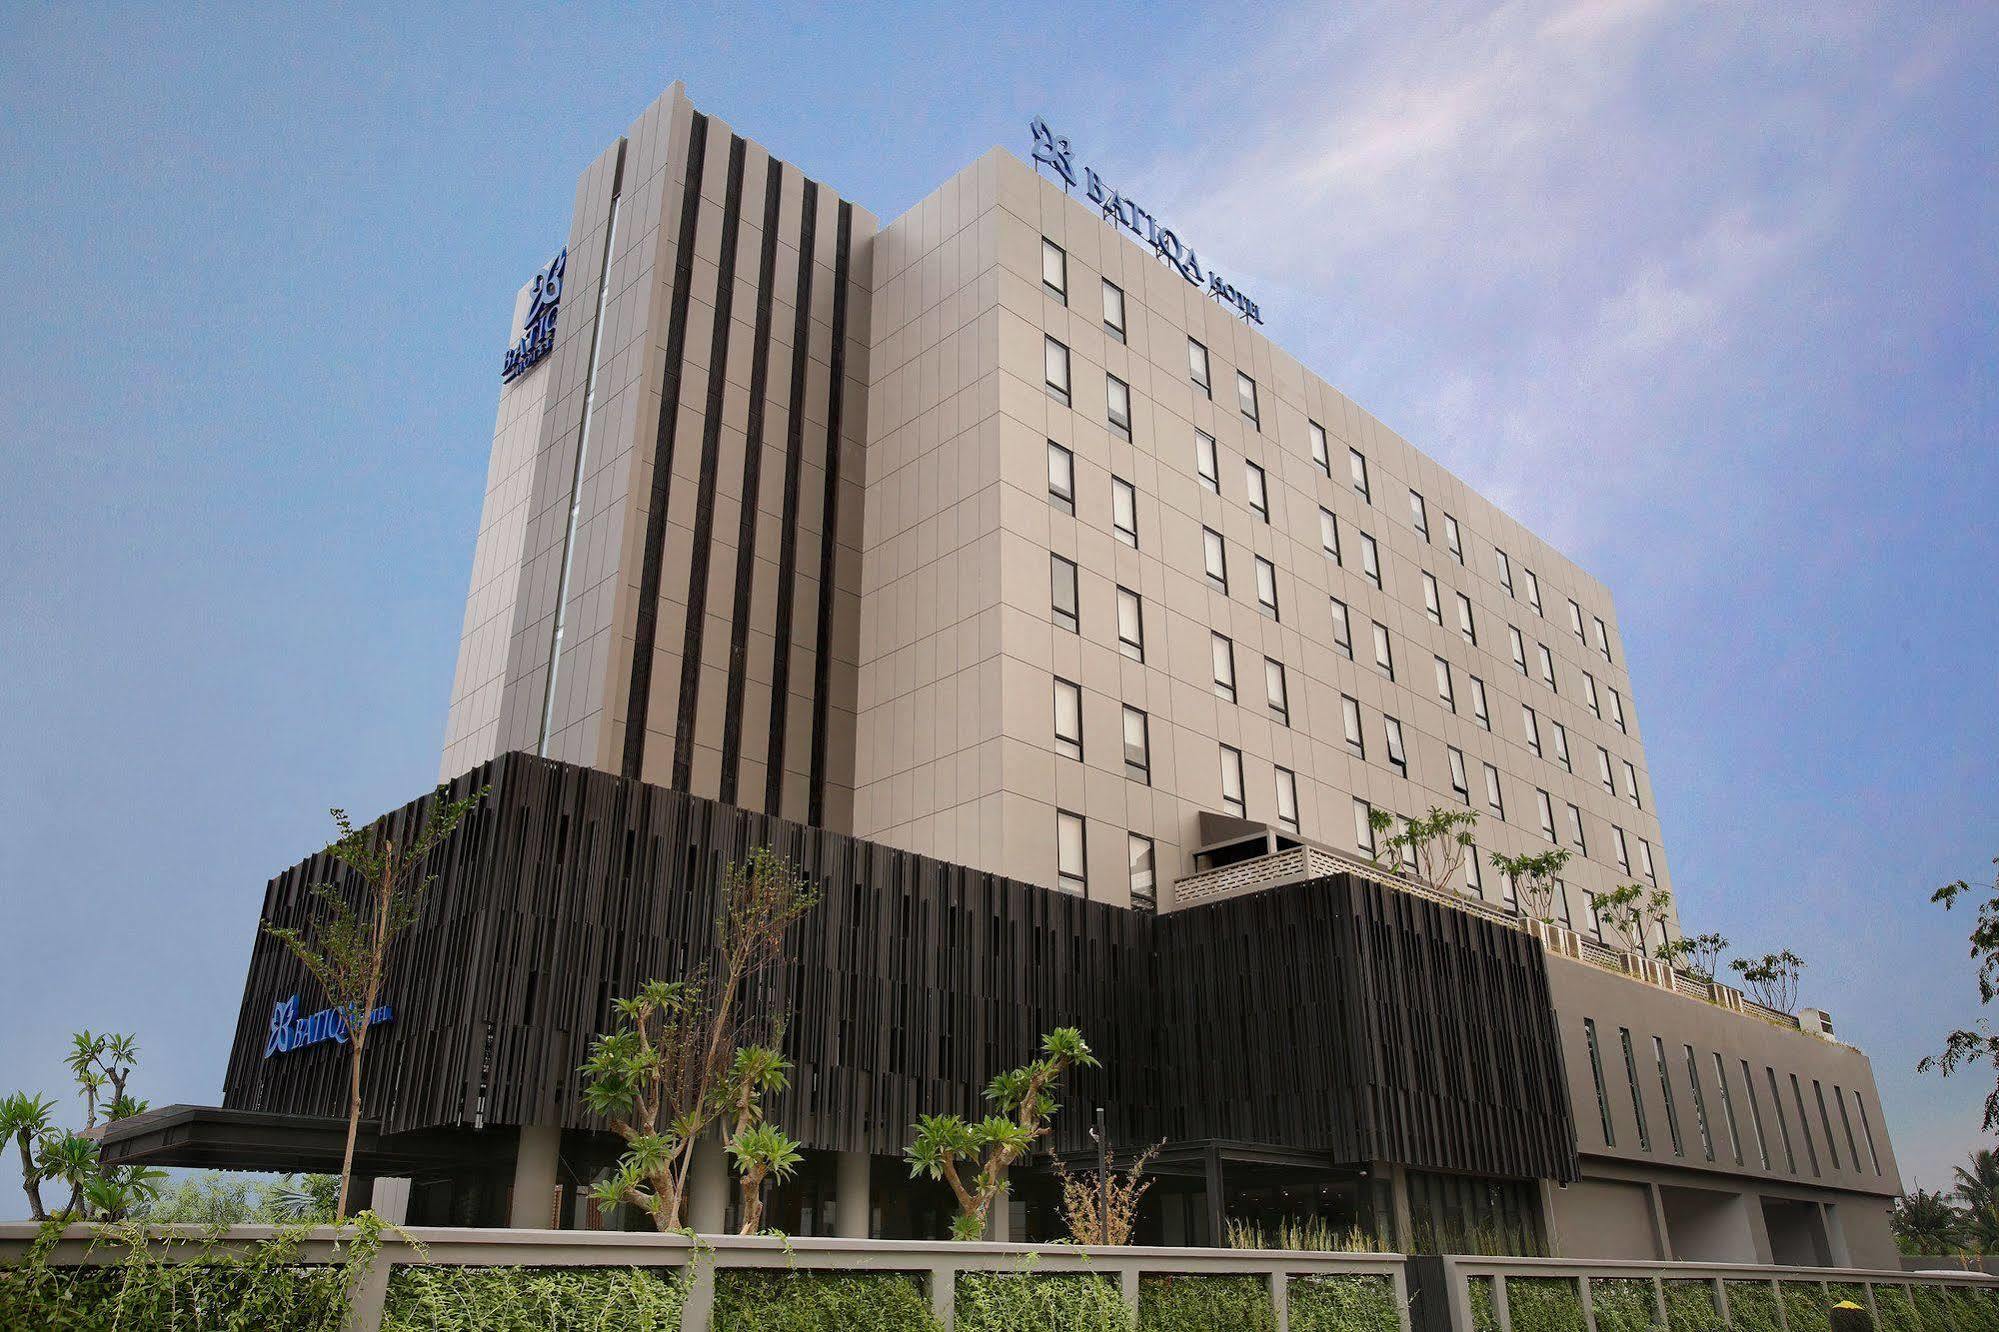 Batiqa ホテル ジャバベカ チカラン エクステリア 写真